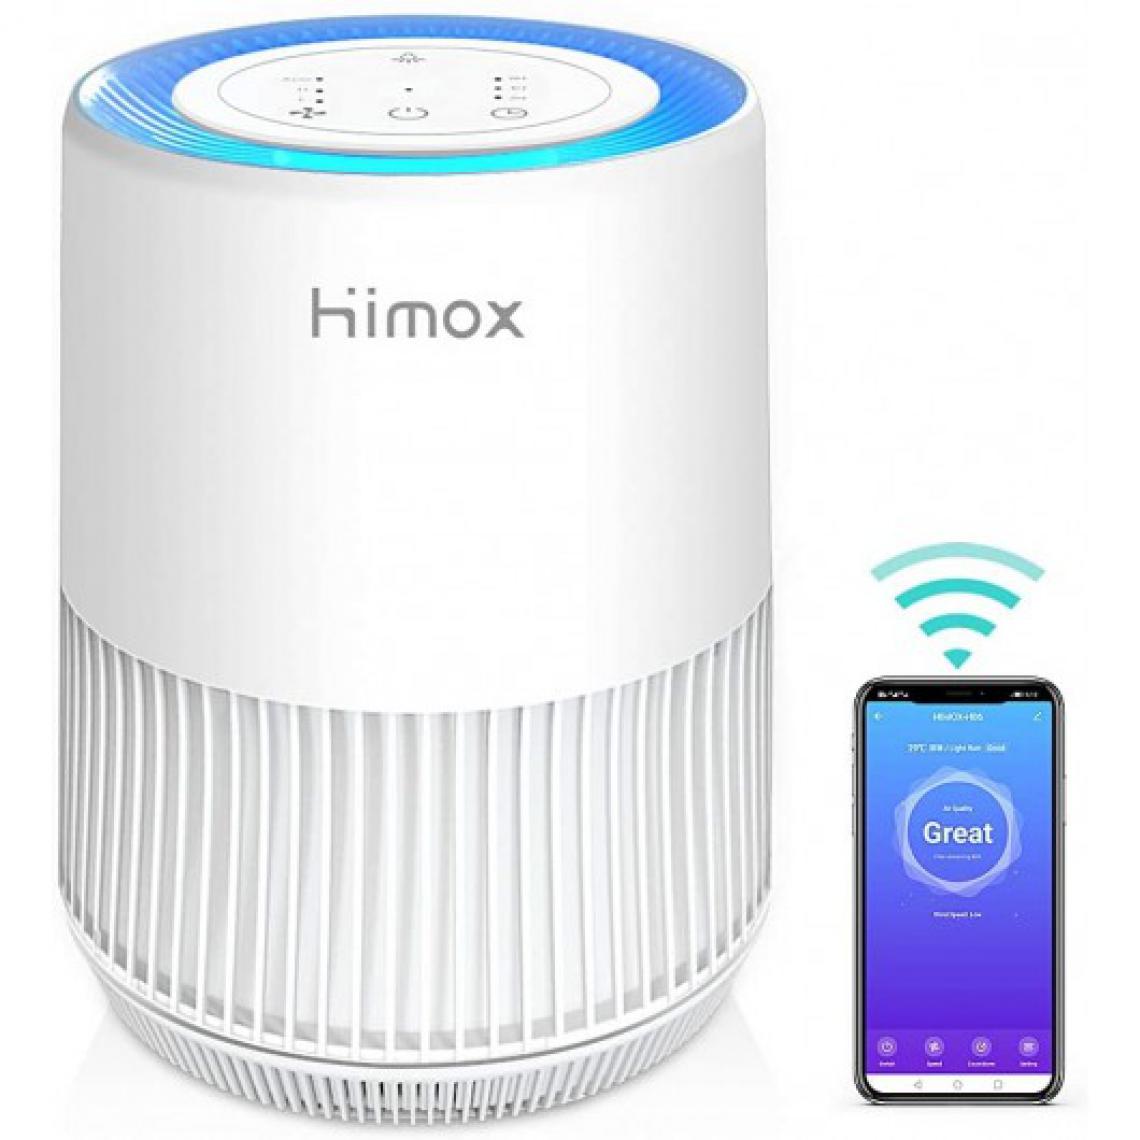 Himox - Himox H06, le purificateur d'air connecté - Autre appareil de mesure